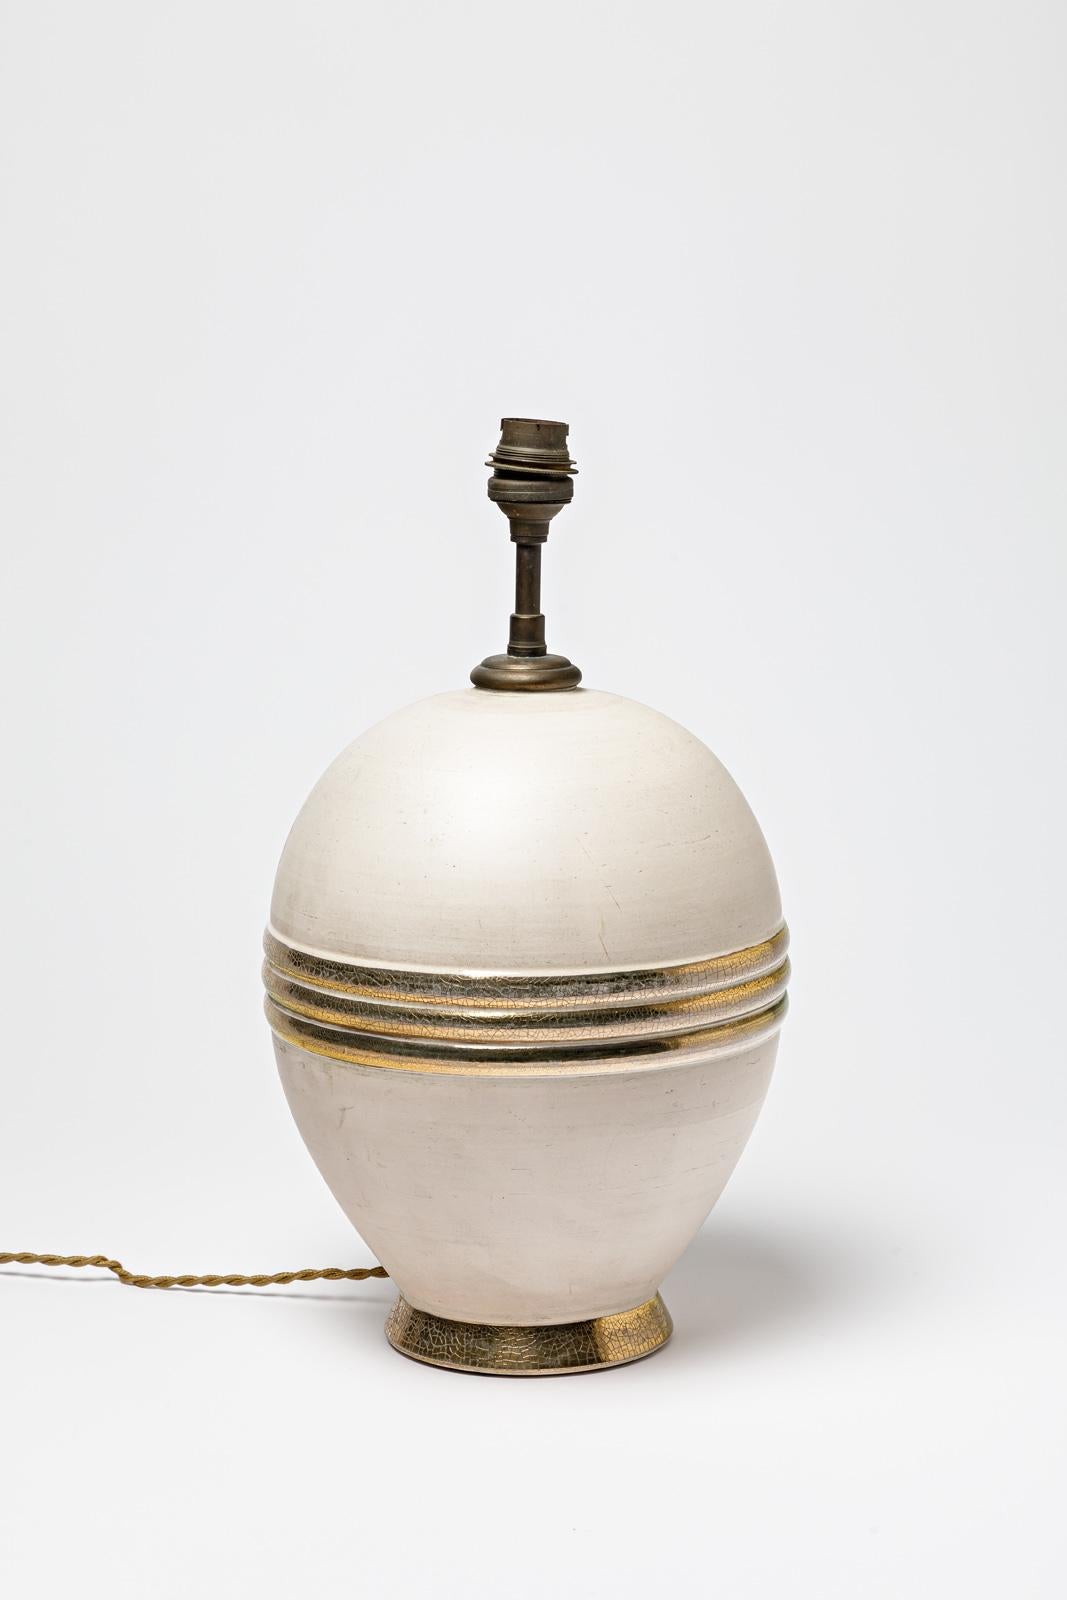 Lampe de table en céramique beige et or / argentée.
Vers 1920-1930.
H : 9.8' x 7.1' pouces (céramique uniquement).
Vendu avec un système électrique européen.